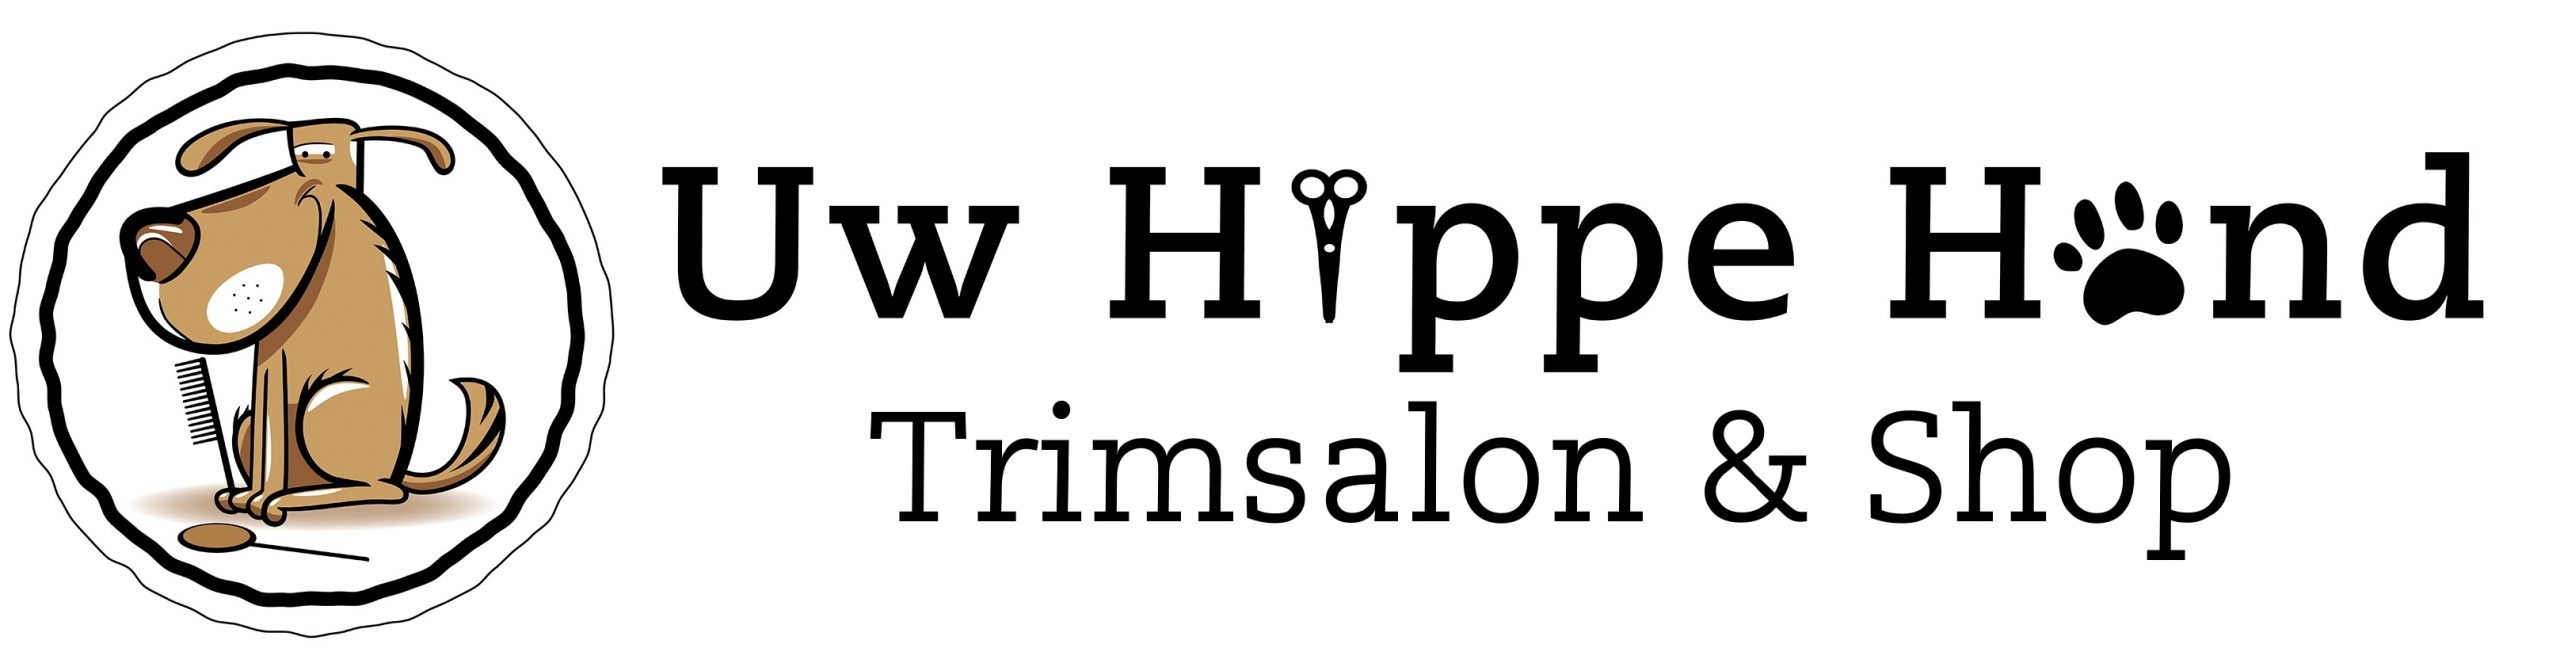 Uw Hippe Hond – Trimsalon & Shop – Winterswijk